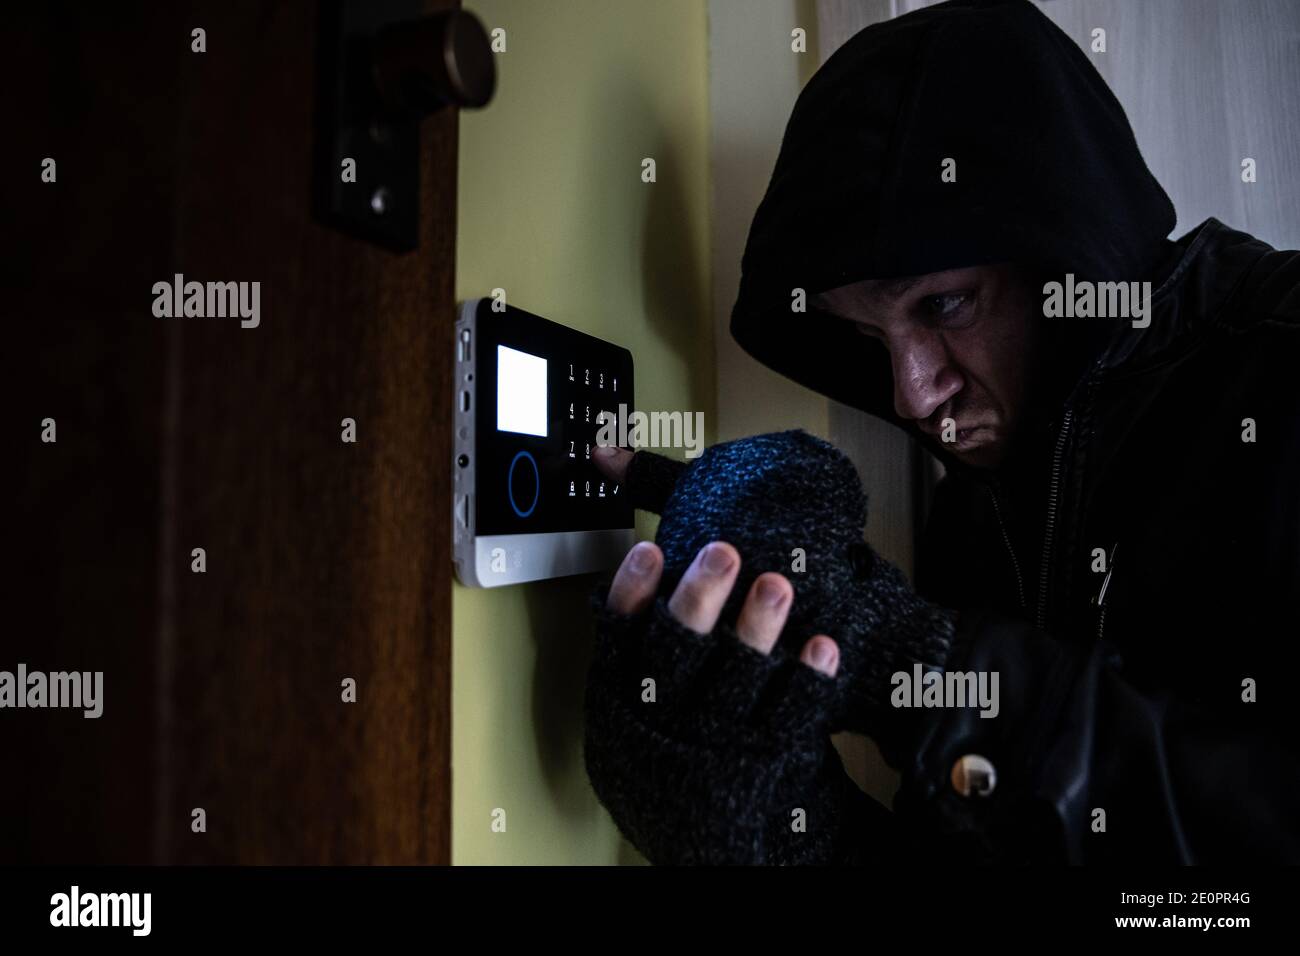 Ein Einbrecher mit Handschuhen und einer Kapuze auf dem Kopf versucht, die Alarmanlage zu entwaffnen. Stockfoto